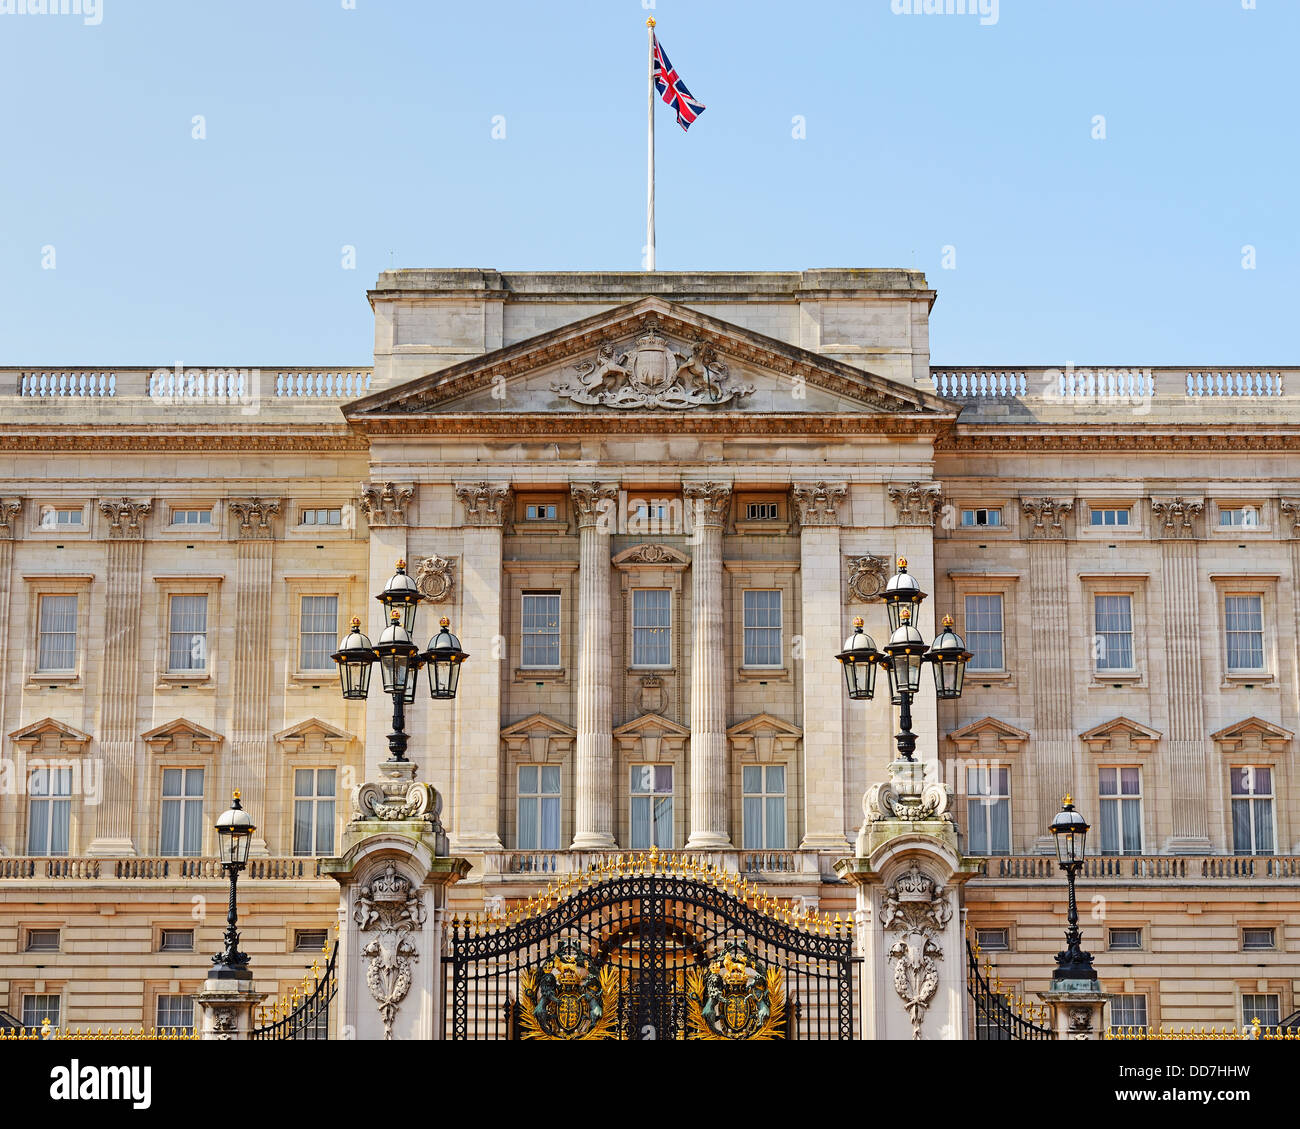 Buckingham Palace, London, England, UK. Stock Photo